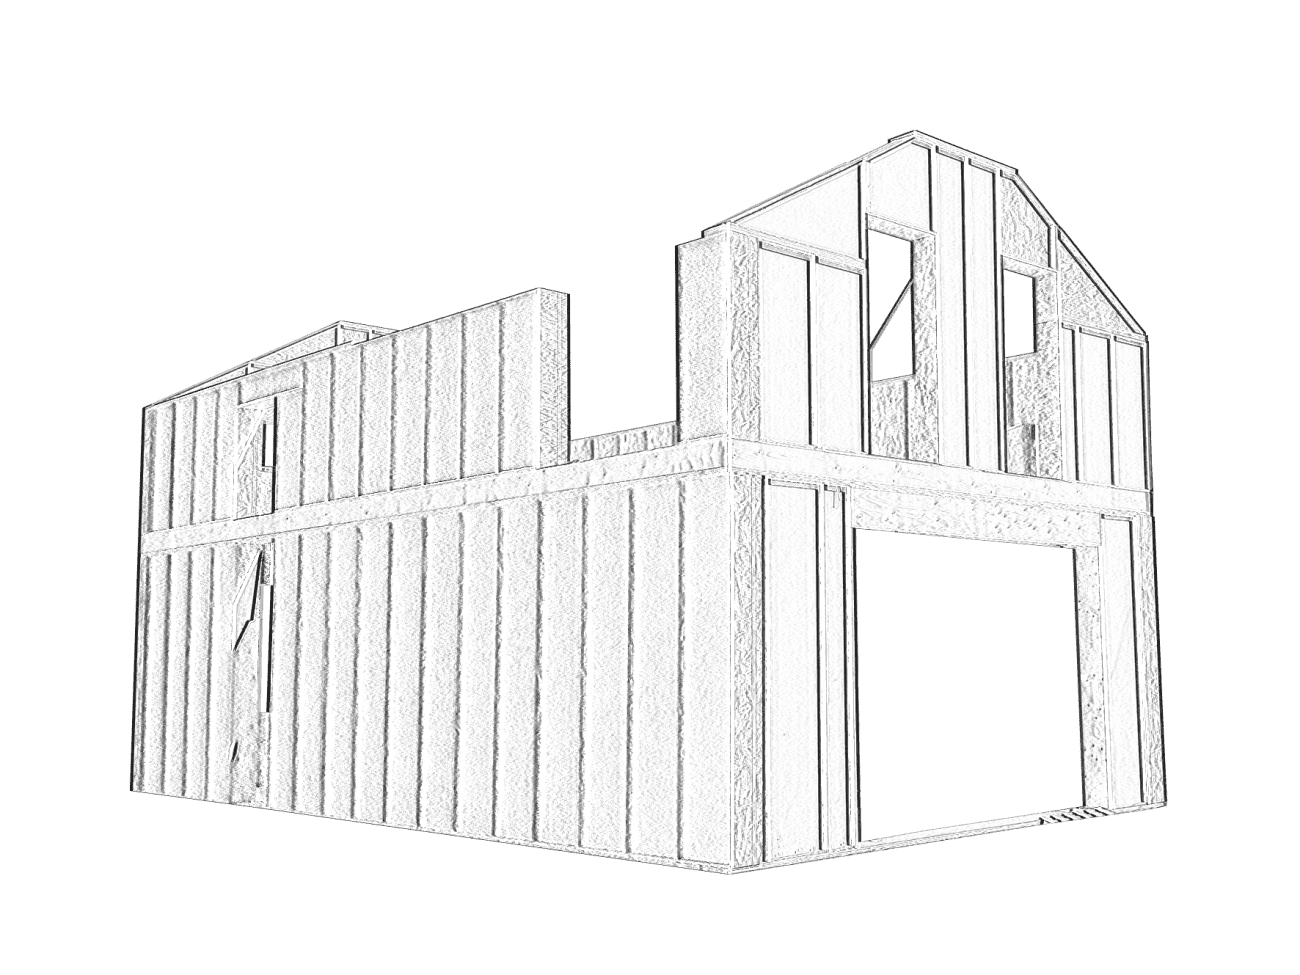 Image maison en bois